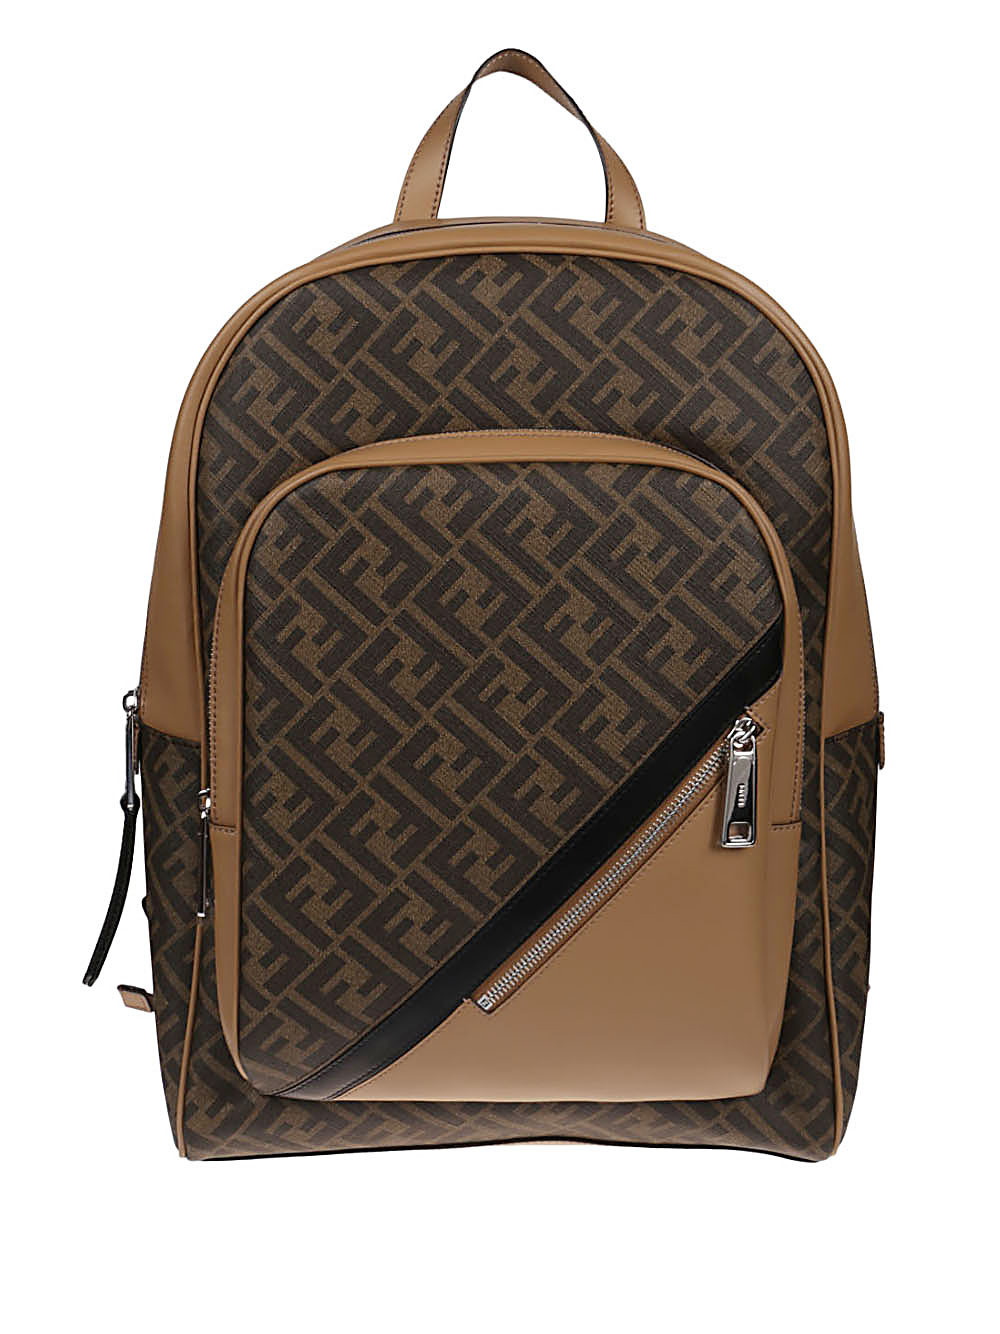 FENDI - Backpack In Logoed Fabric Fendi